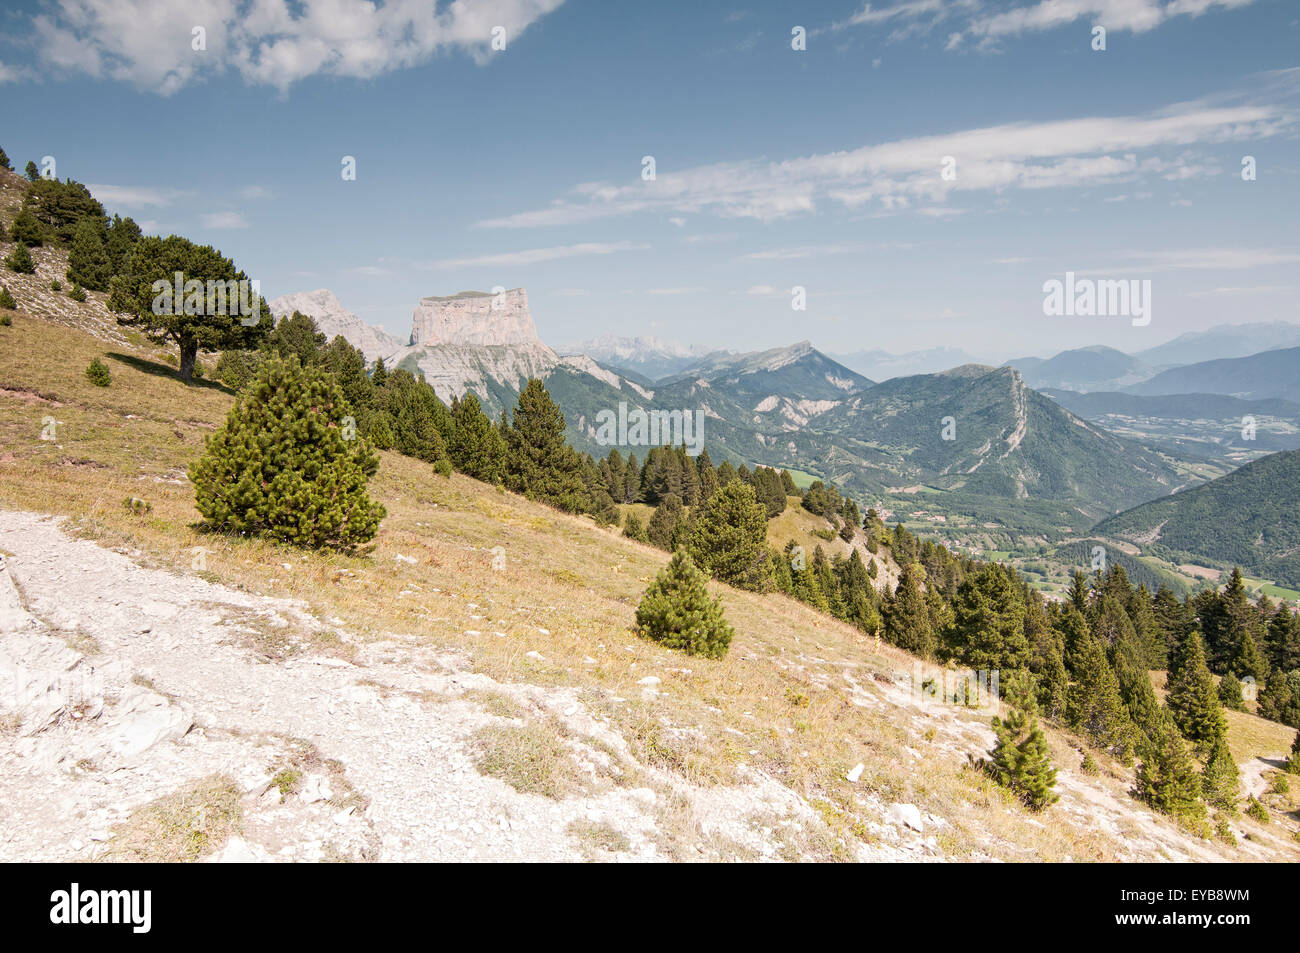 Vue sur parc dans le Parc Régional du Vercors, avec le Mont Aiguille en arrière-plan. Isere. Alpes françaises. La France. Banque D'Images